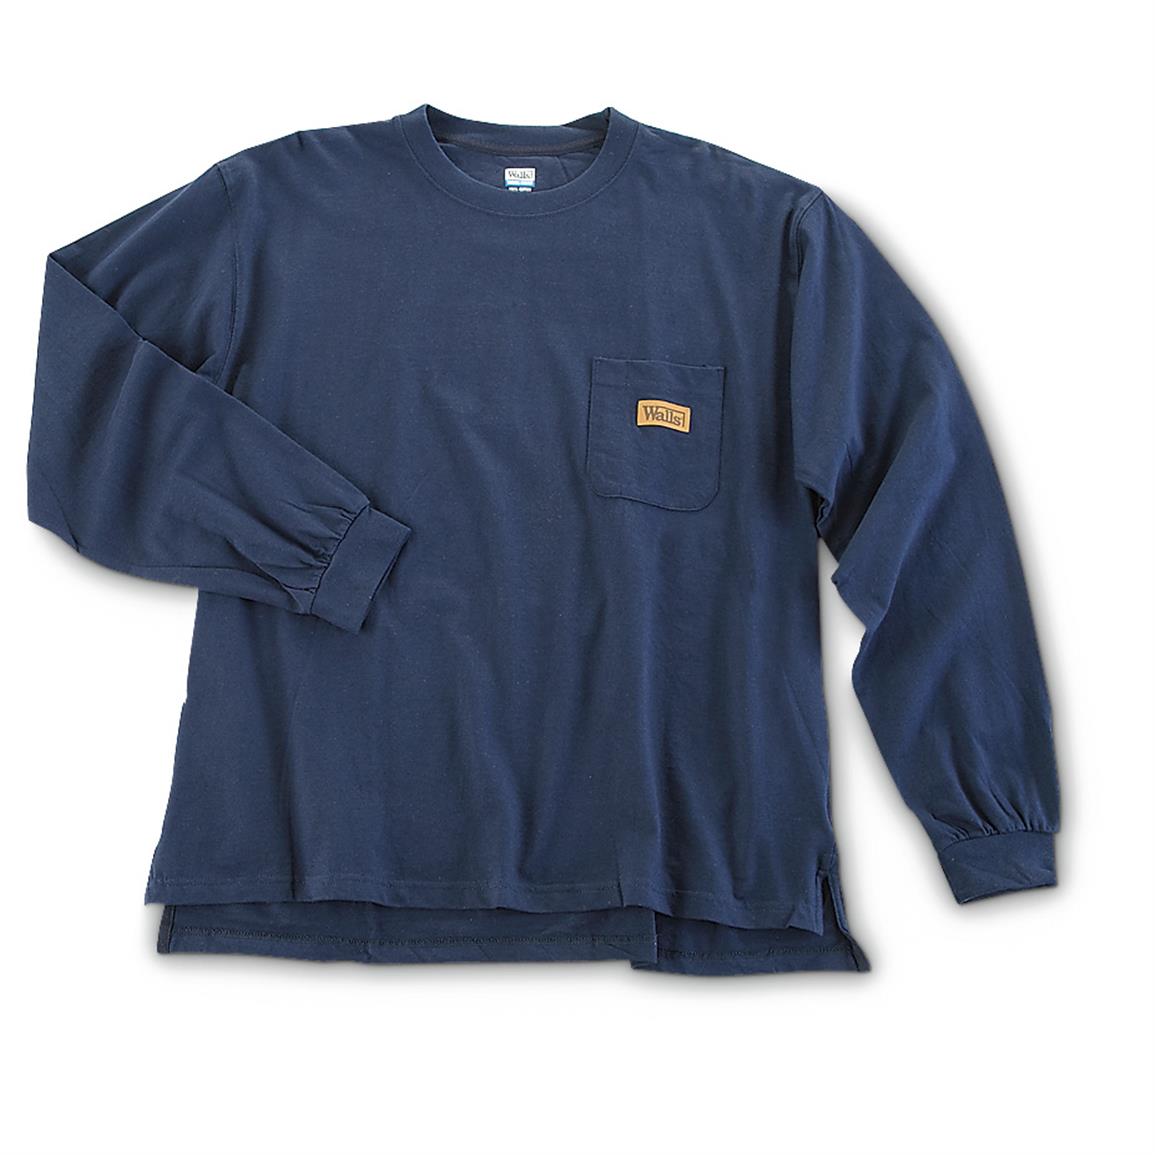 Walls Men's Long-Sleeved Pocket T-Shirts, 2 Pack - 635703, T-Shirts at ...